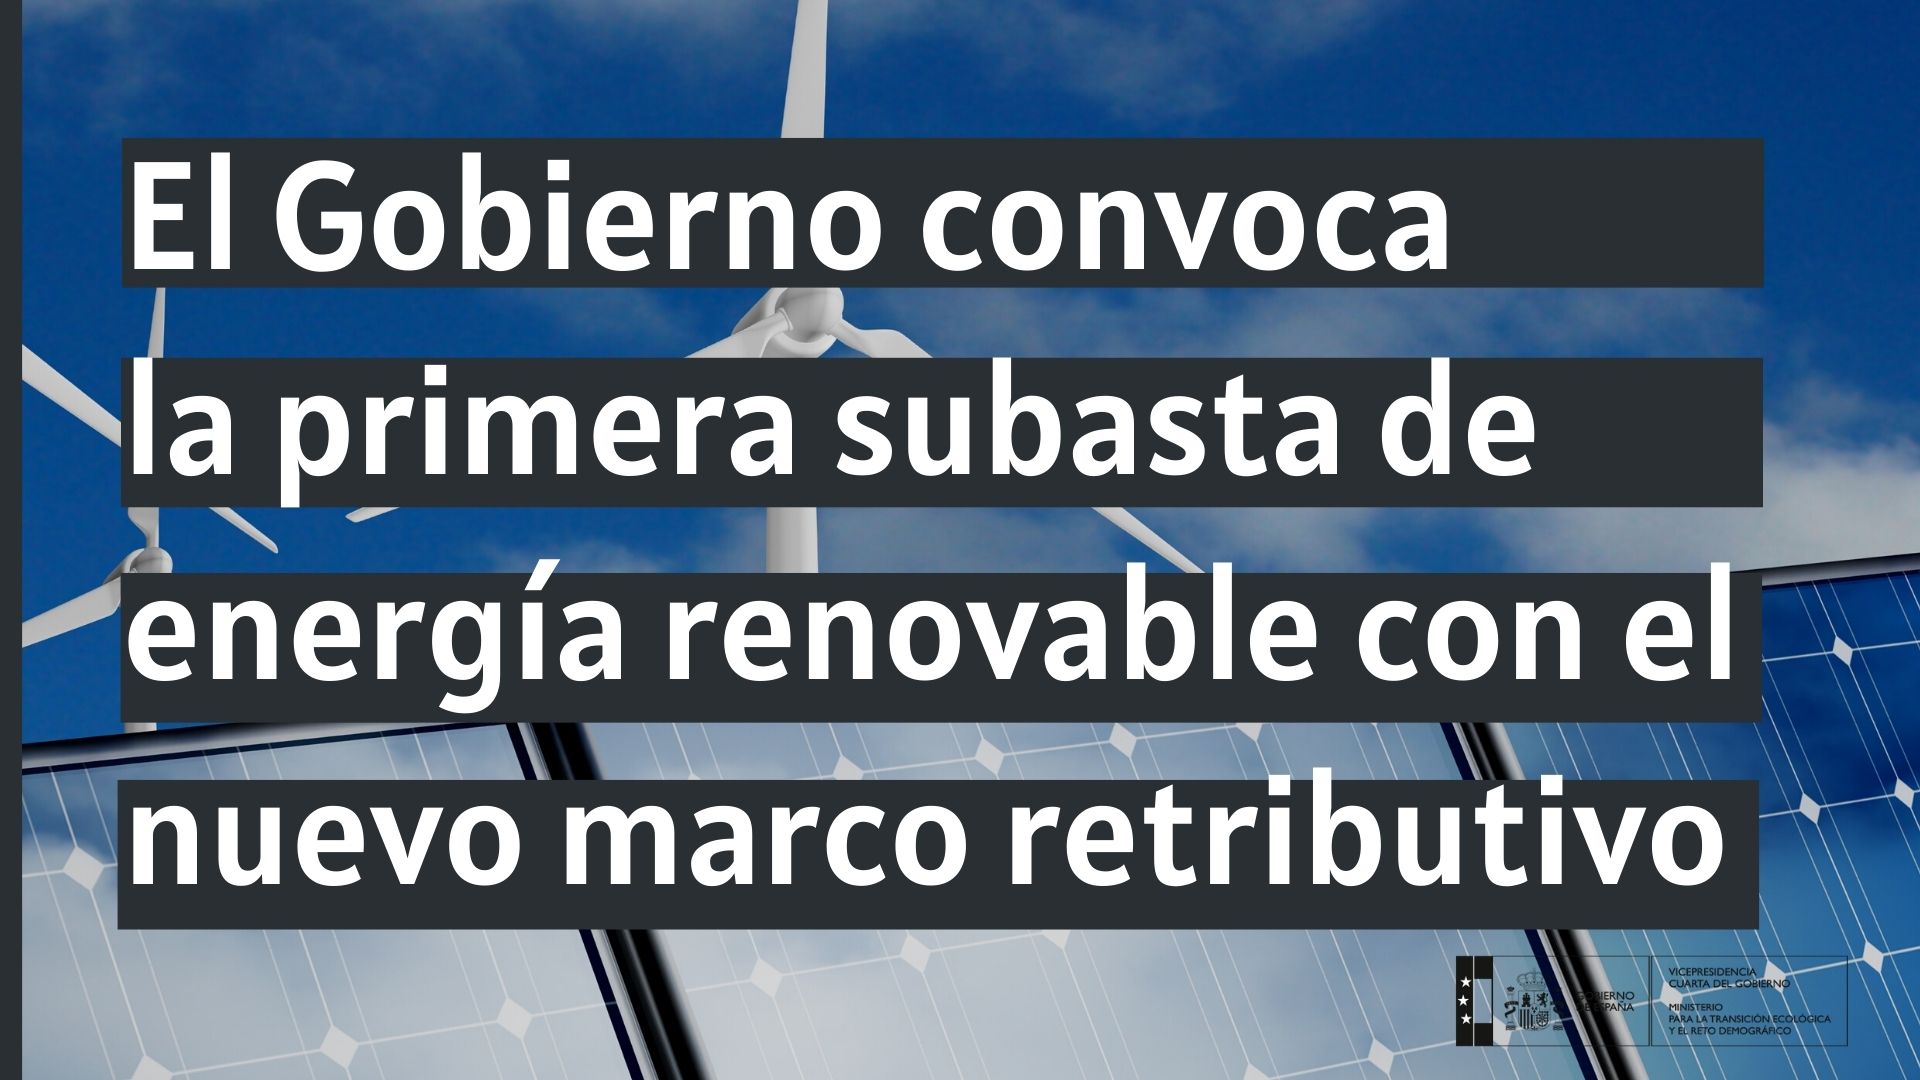 Primera convocatoria de subastasEl Gobierno convoca la primera subasta de energía renovable con el nuevo marco retributivo